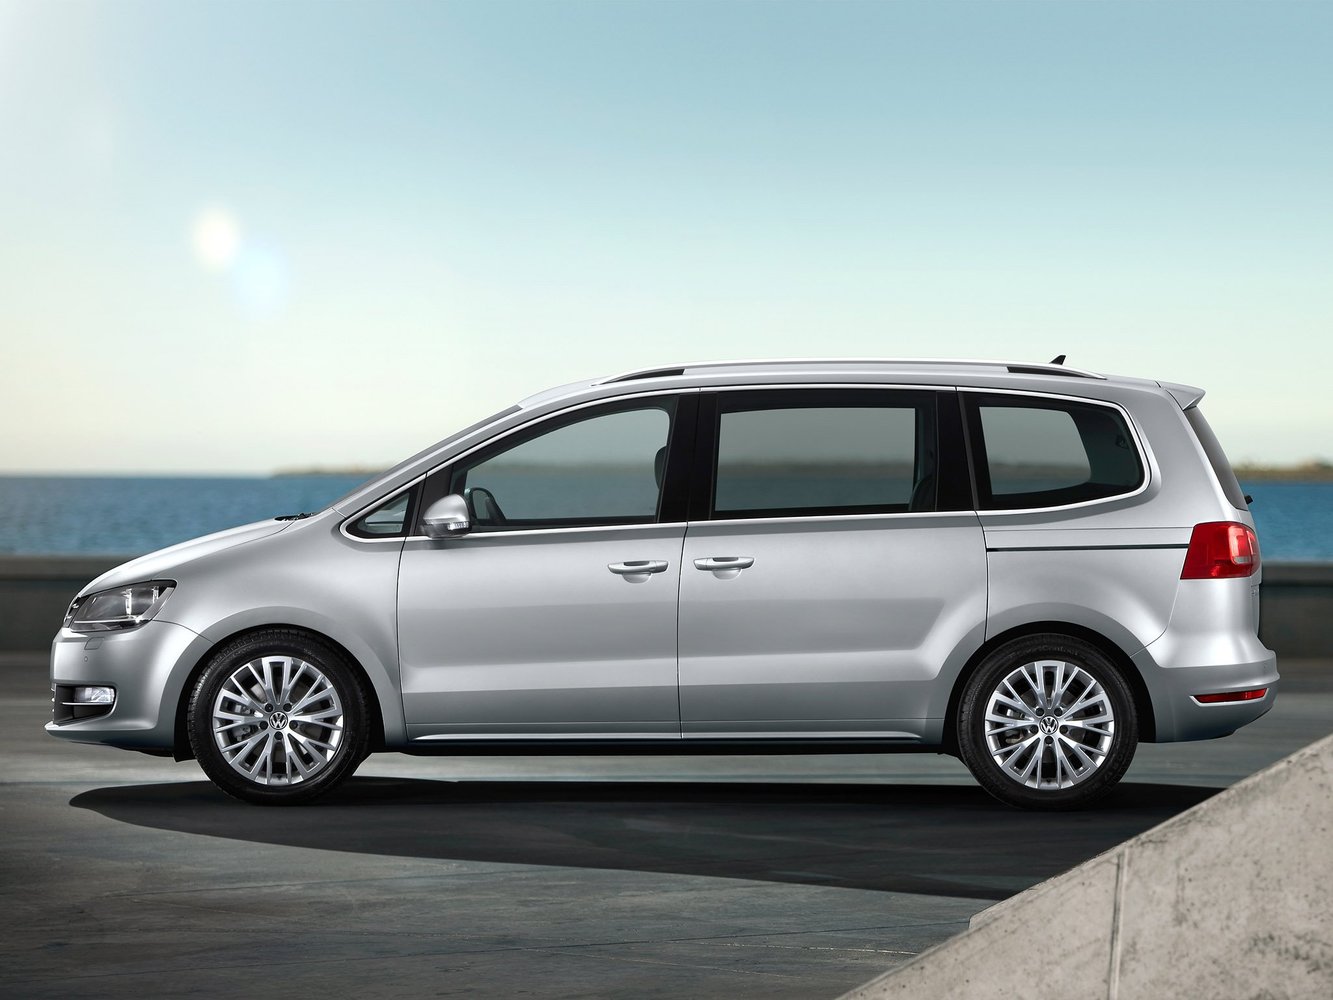 минивэн Volkswagen Sharan 2010 - 2015г выпуска модификация 1.4 AMT (150 л.с.)